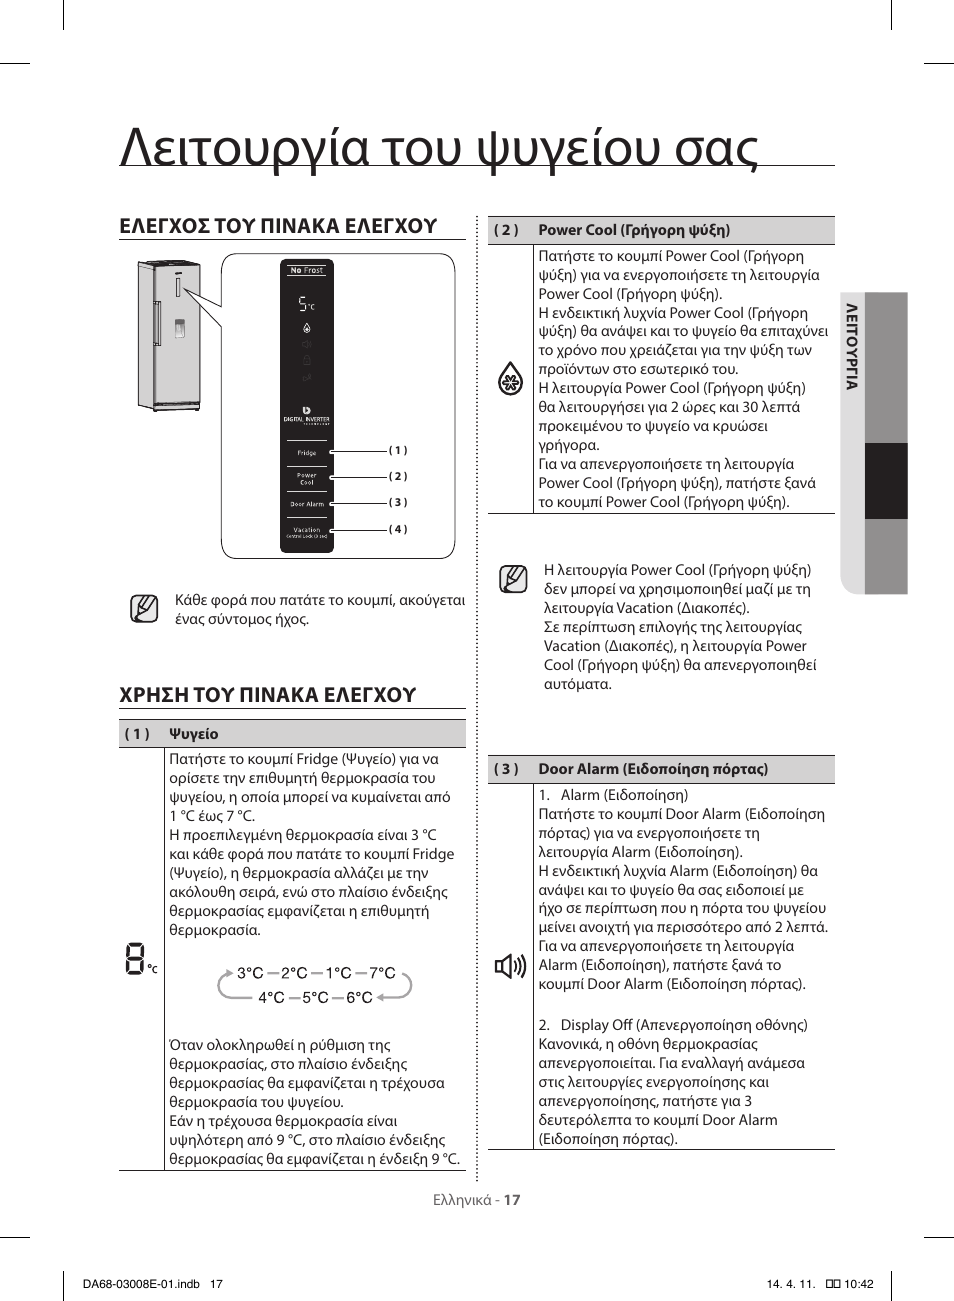 Λειτουργία του ψυγείου σας, Ελεγχοσ τού πινακα ελεγχού, Χρηση τού πινακα  ελεγχού | Samsung RR35H6000SS User Manual | Page 121 / 132